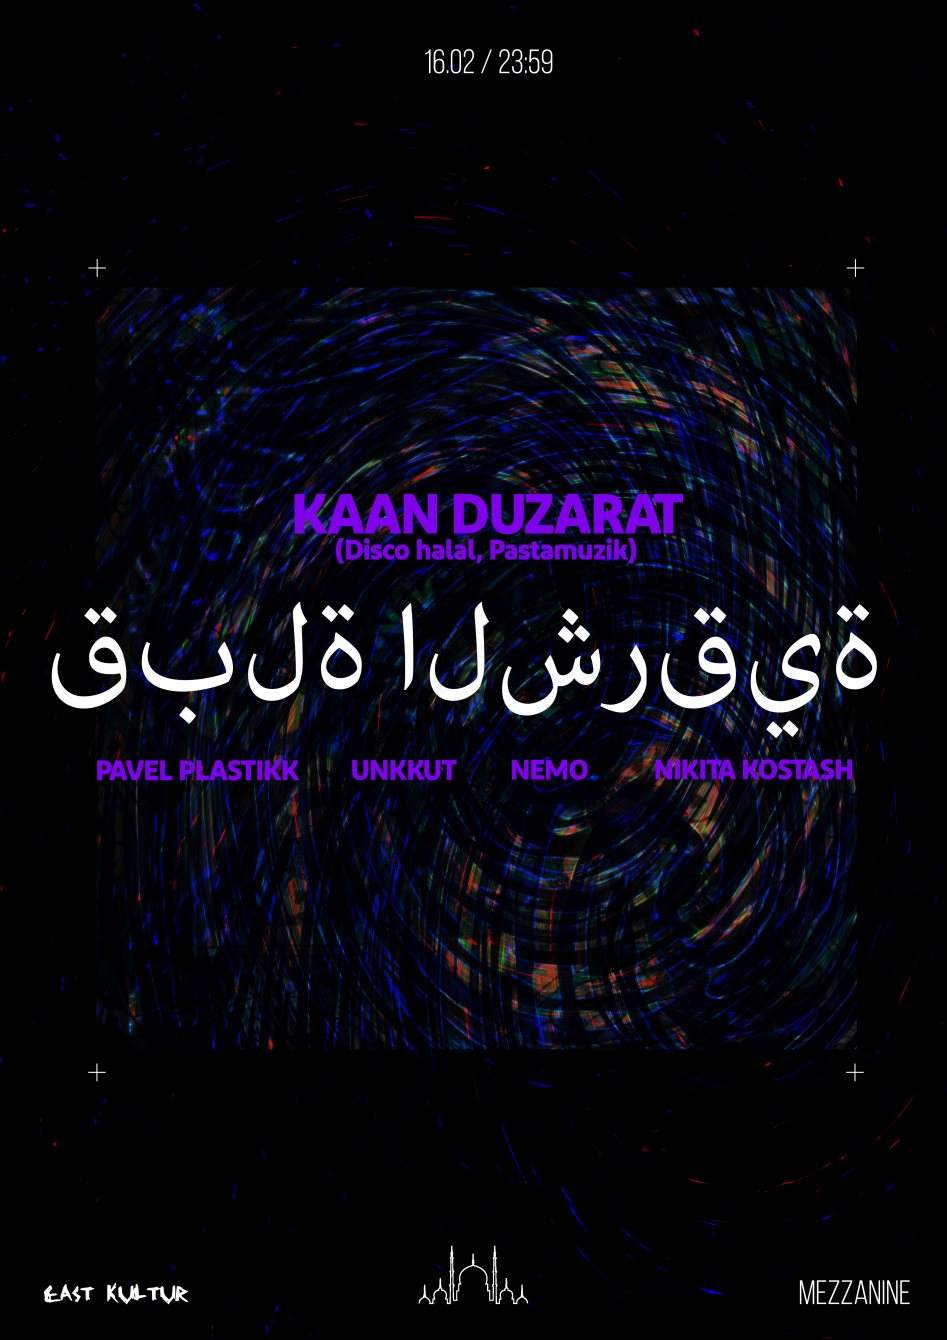 East Kultur: with Kaan Duzarat (Disco Hamam, FOC Edits) - フライヤー裏